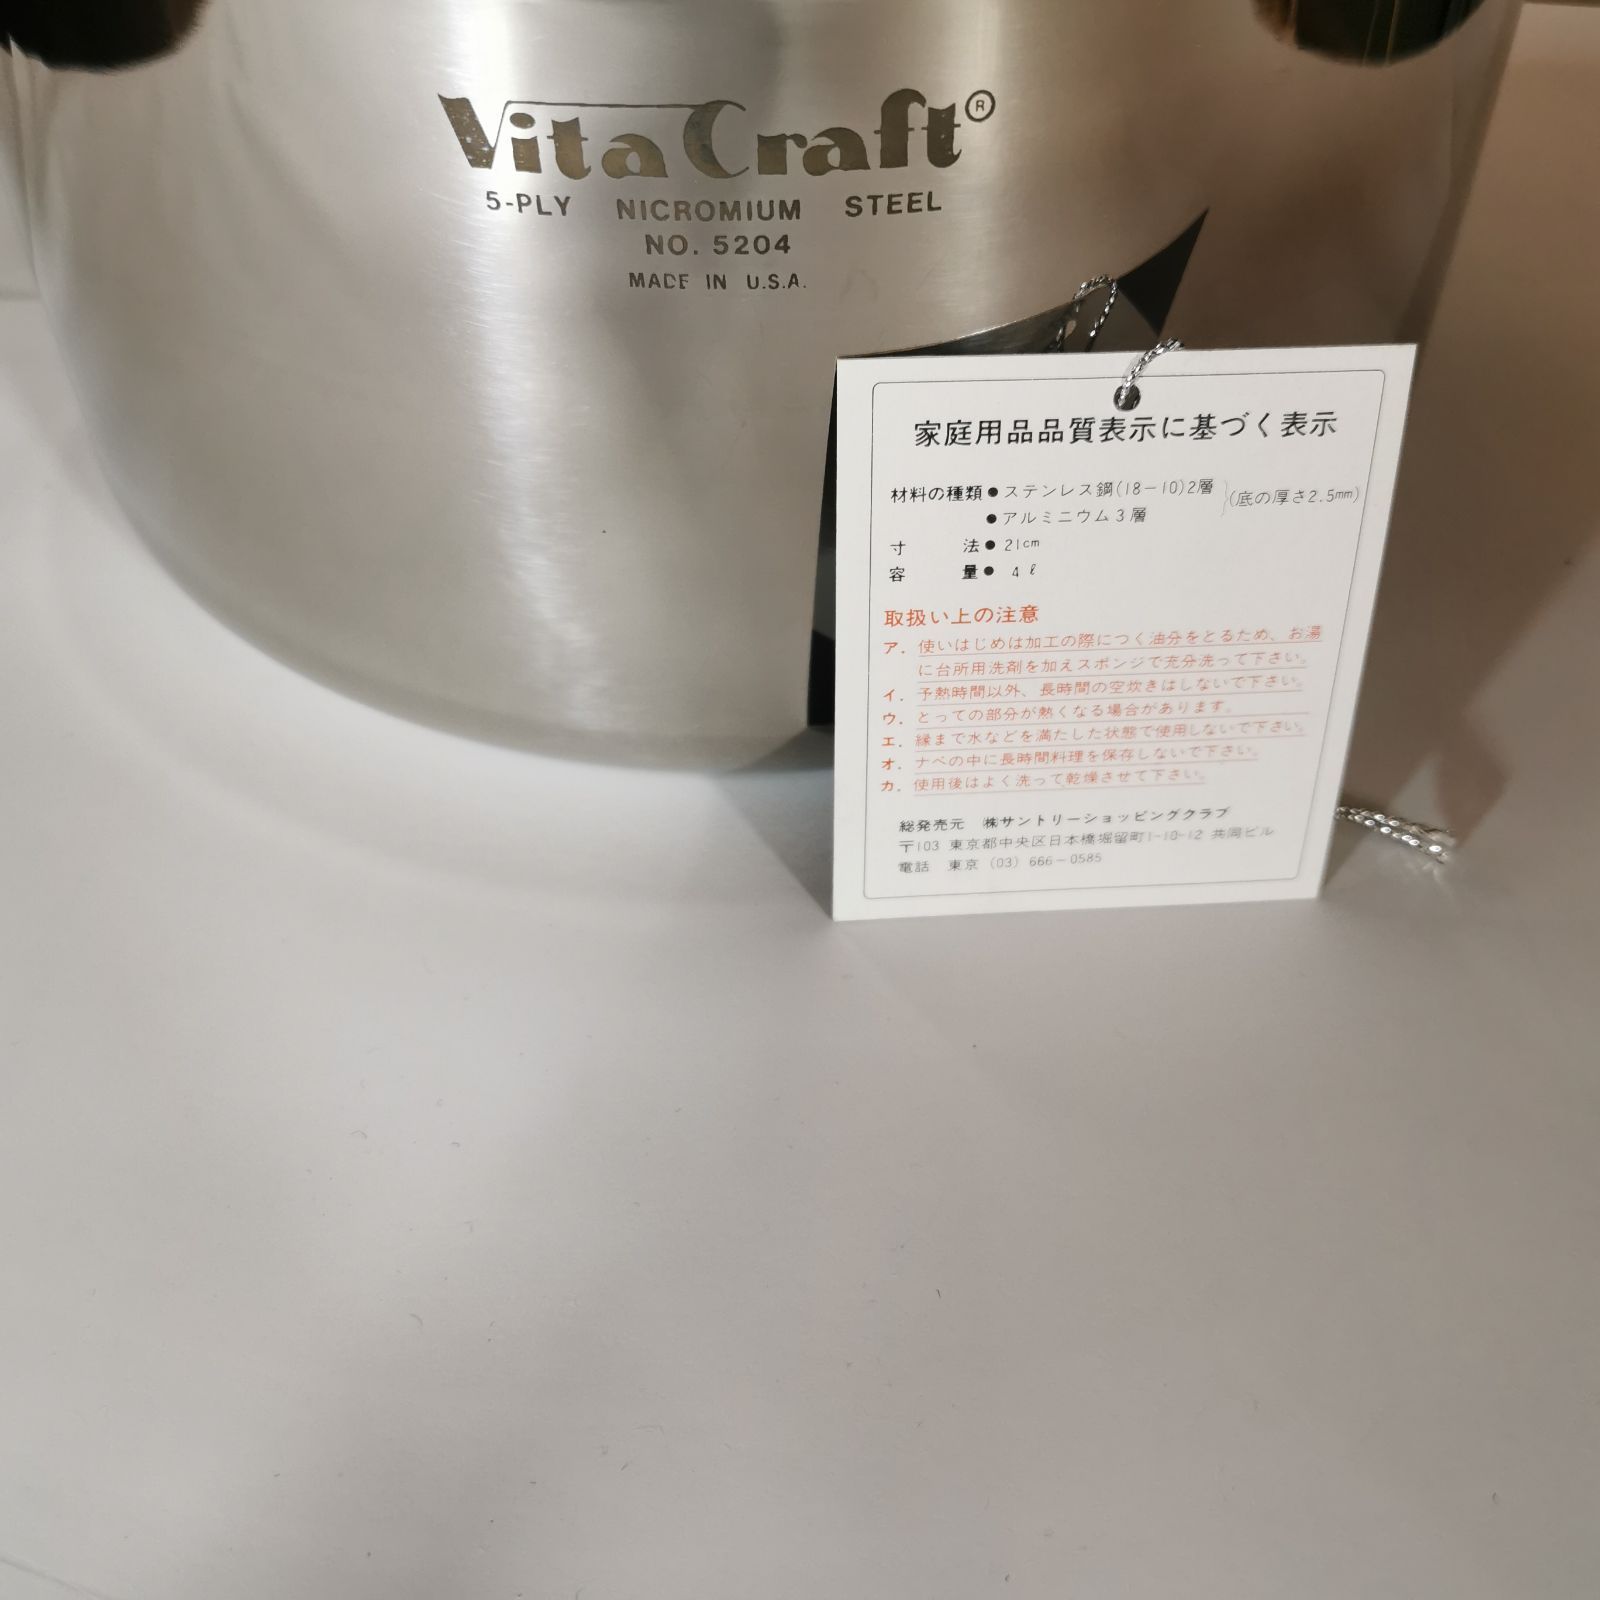 ビタクラフト 5層 両手鍋 No.5204 未使用品 - メルカリ